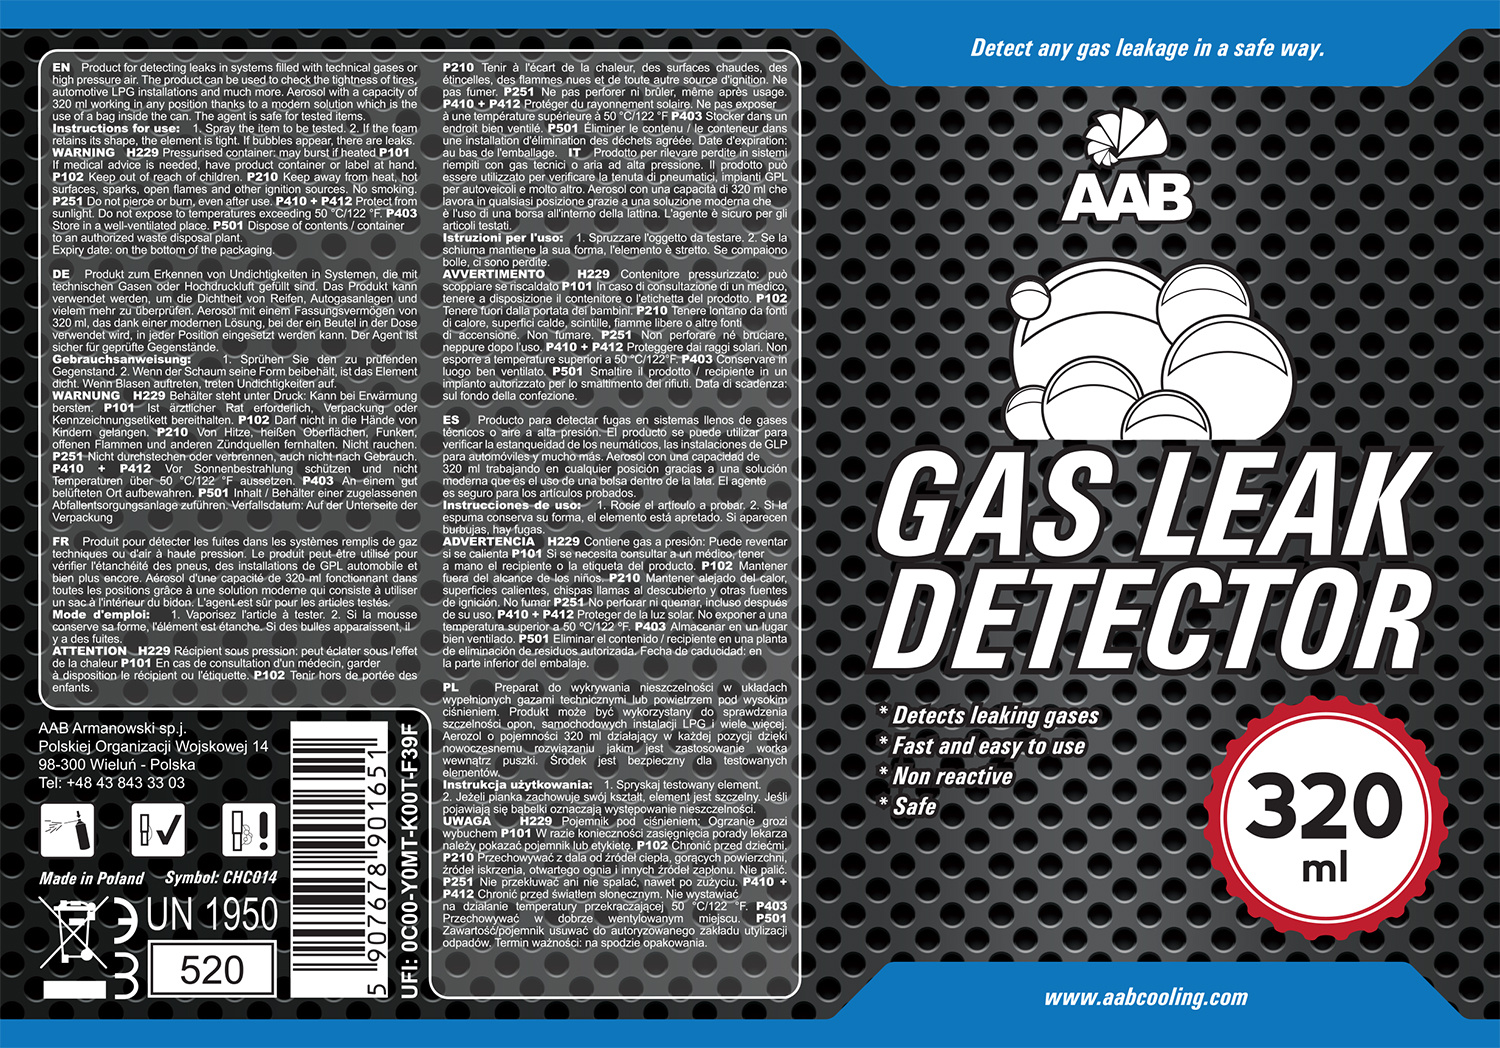 aabcooling_gas_leak_detector_320ml